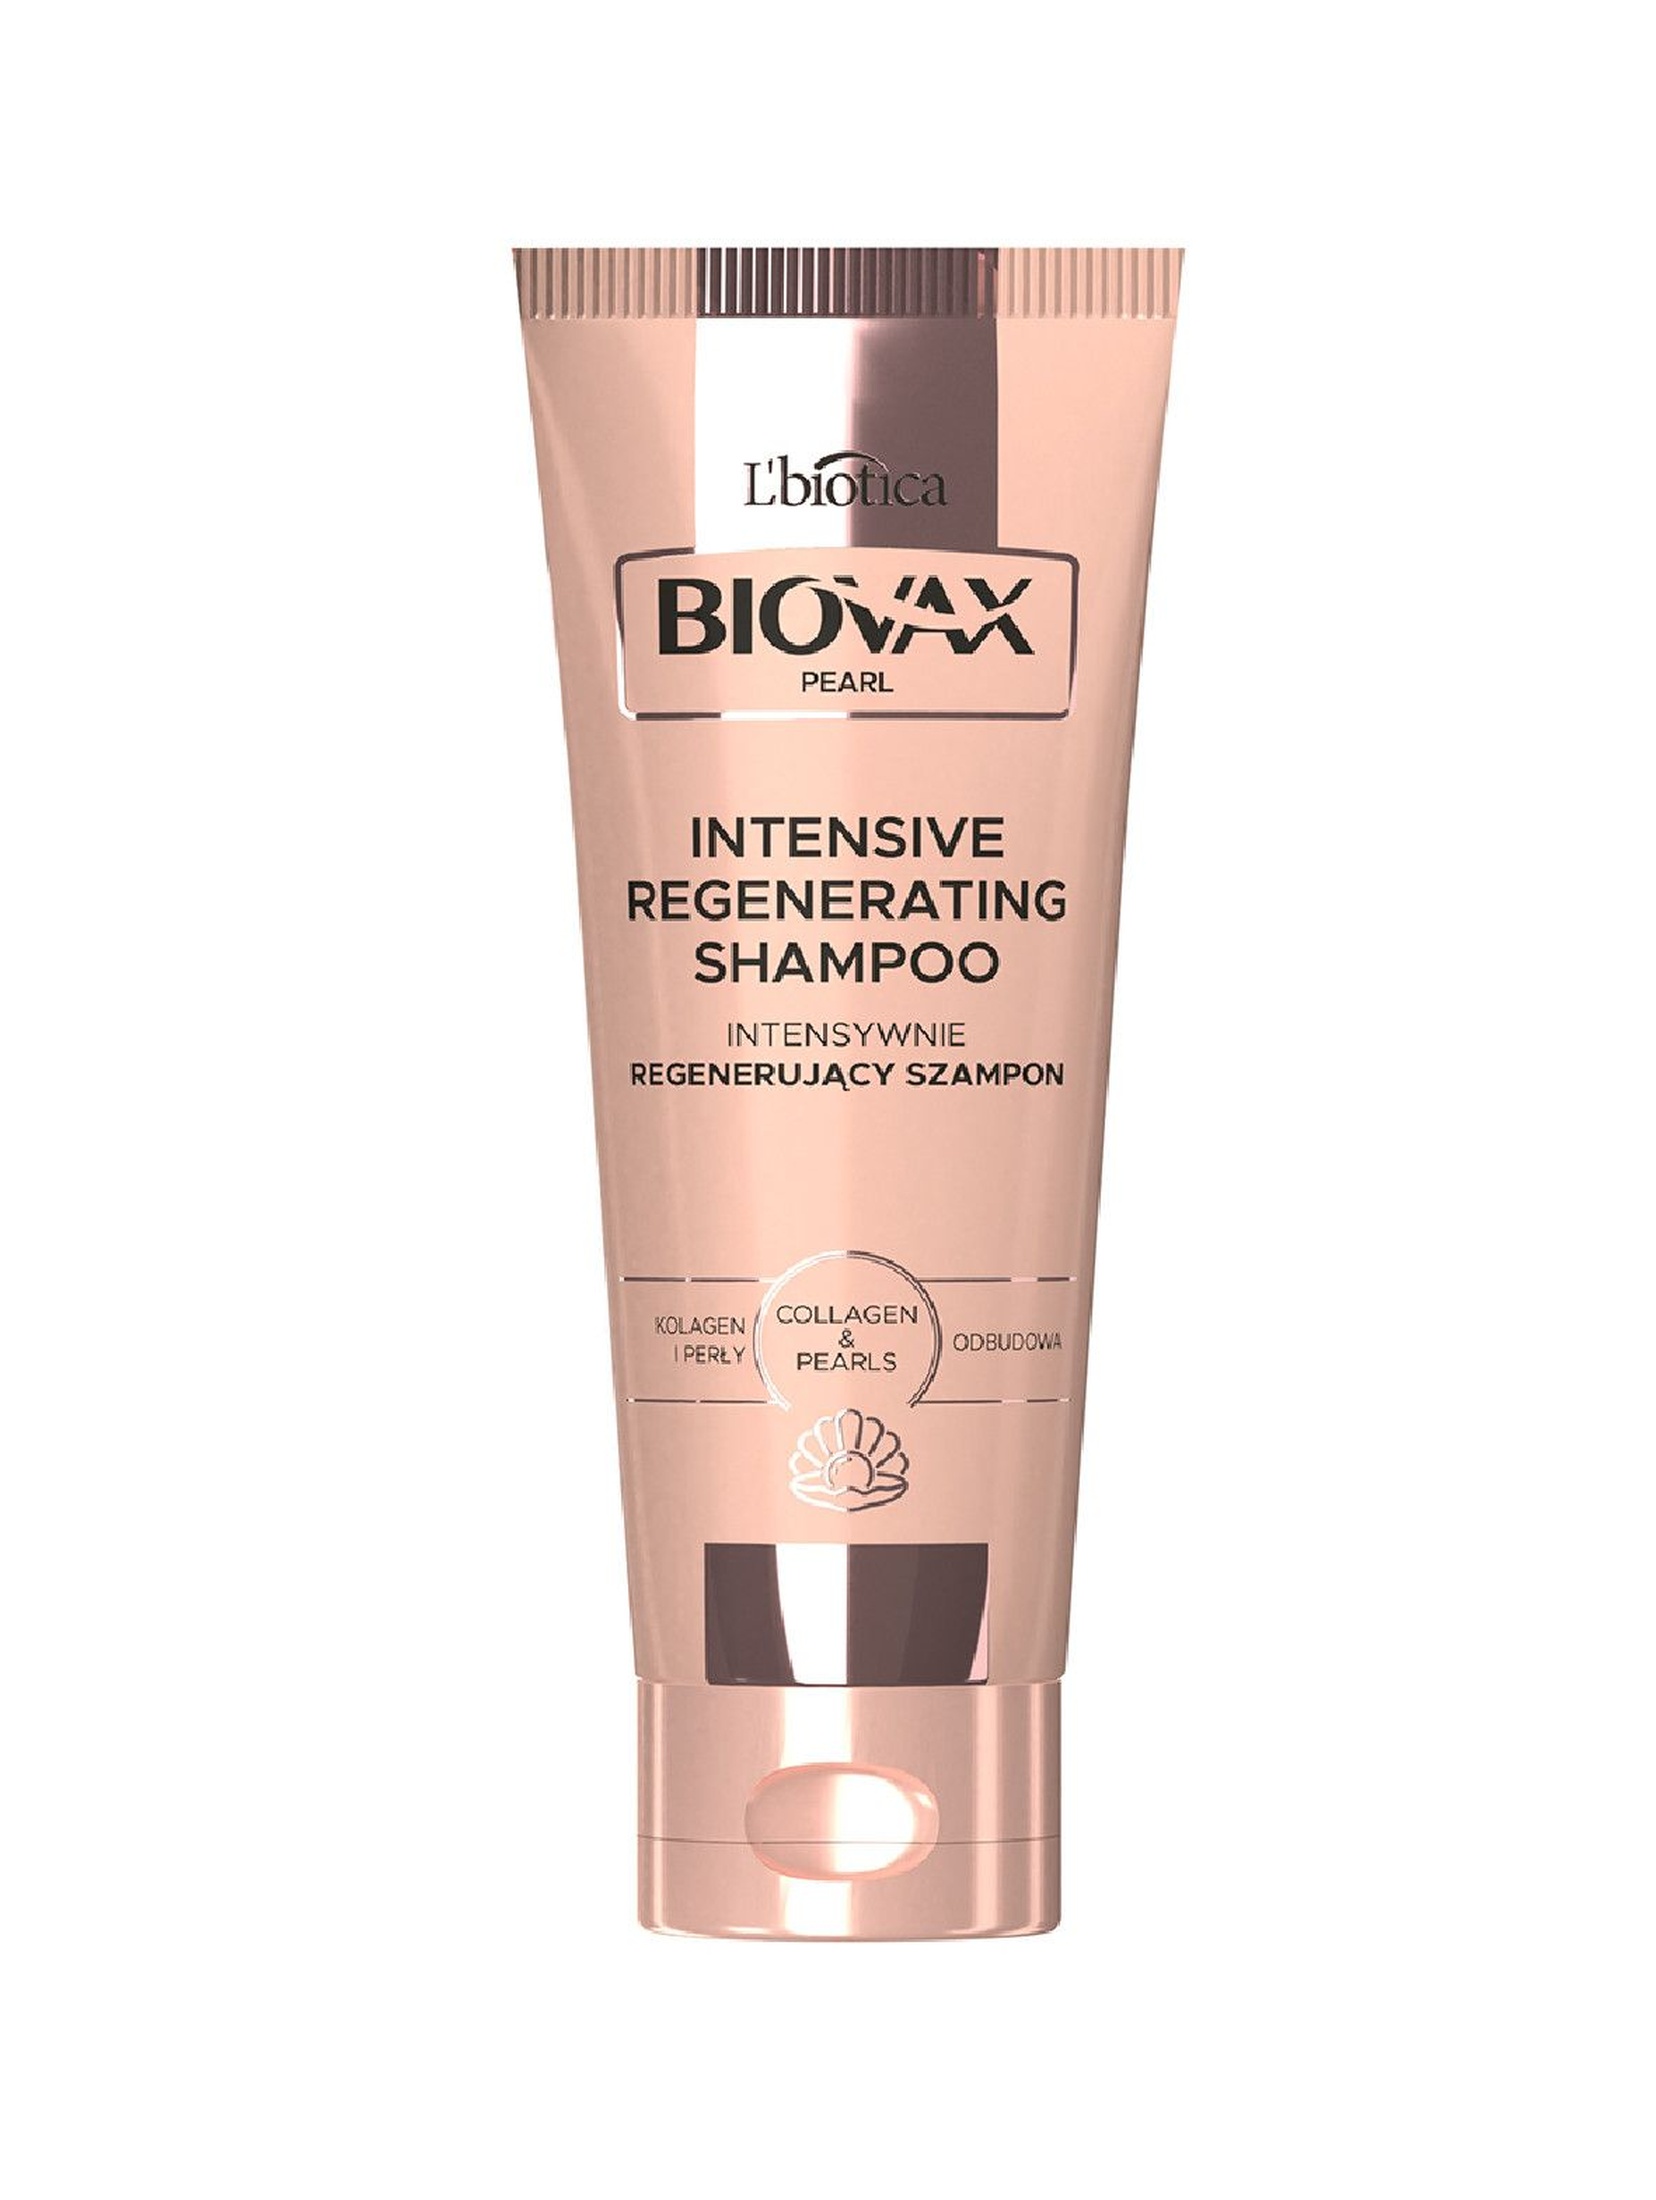 Biovax Glamour Pearl szampon intensywnie regenerujący Kolagen & Perły 200 ml